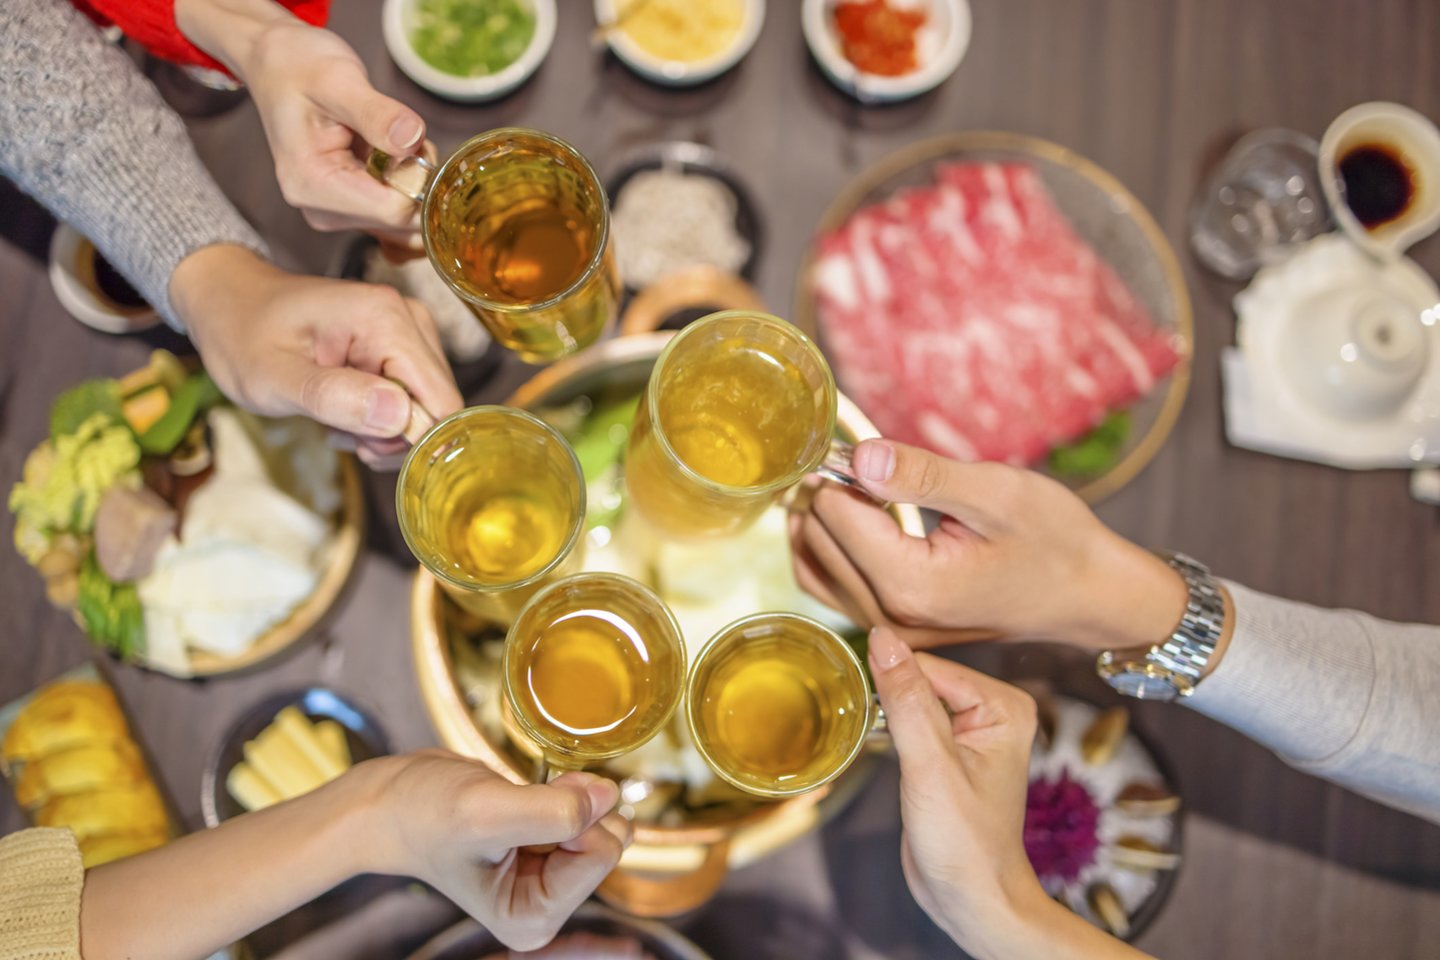 Alaus mėgėjams ieškant naujų skonių, Taivano rinkoje populiarėja įvairesnė produkcija nei tik vietinis alus.<br>„iStock“ nuotr.